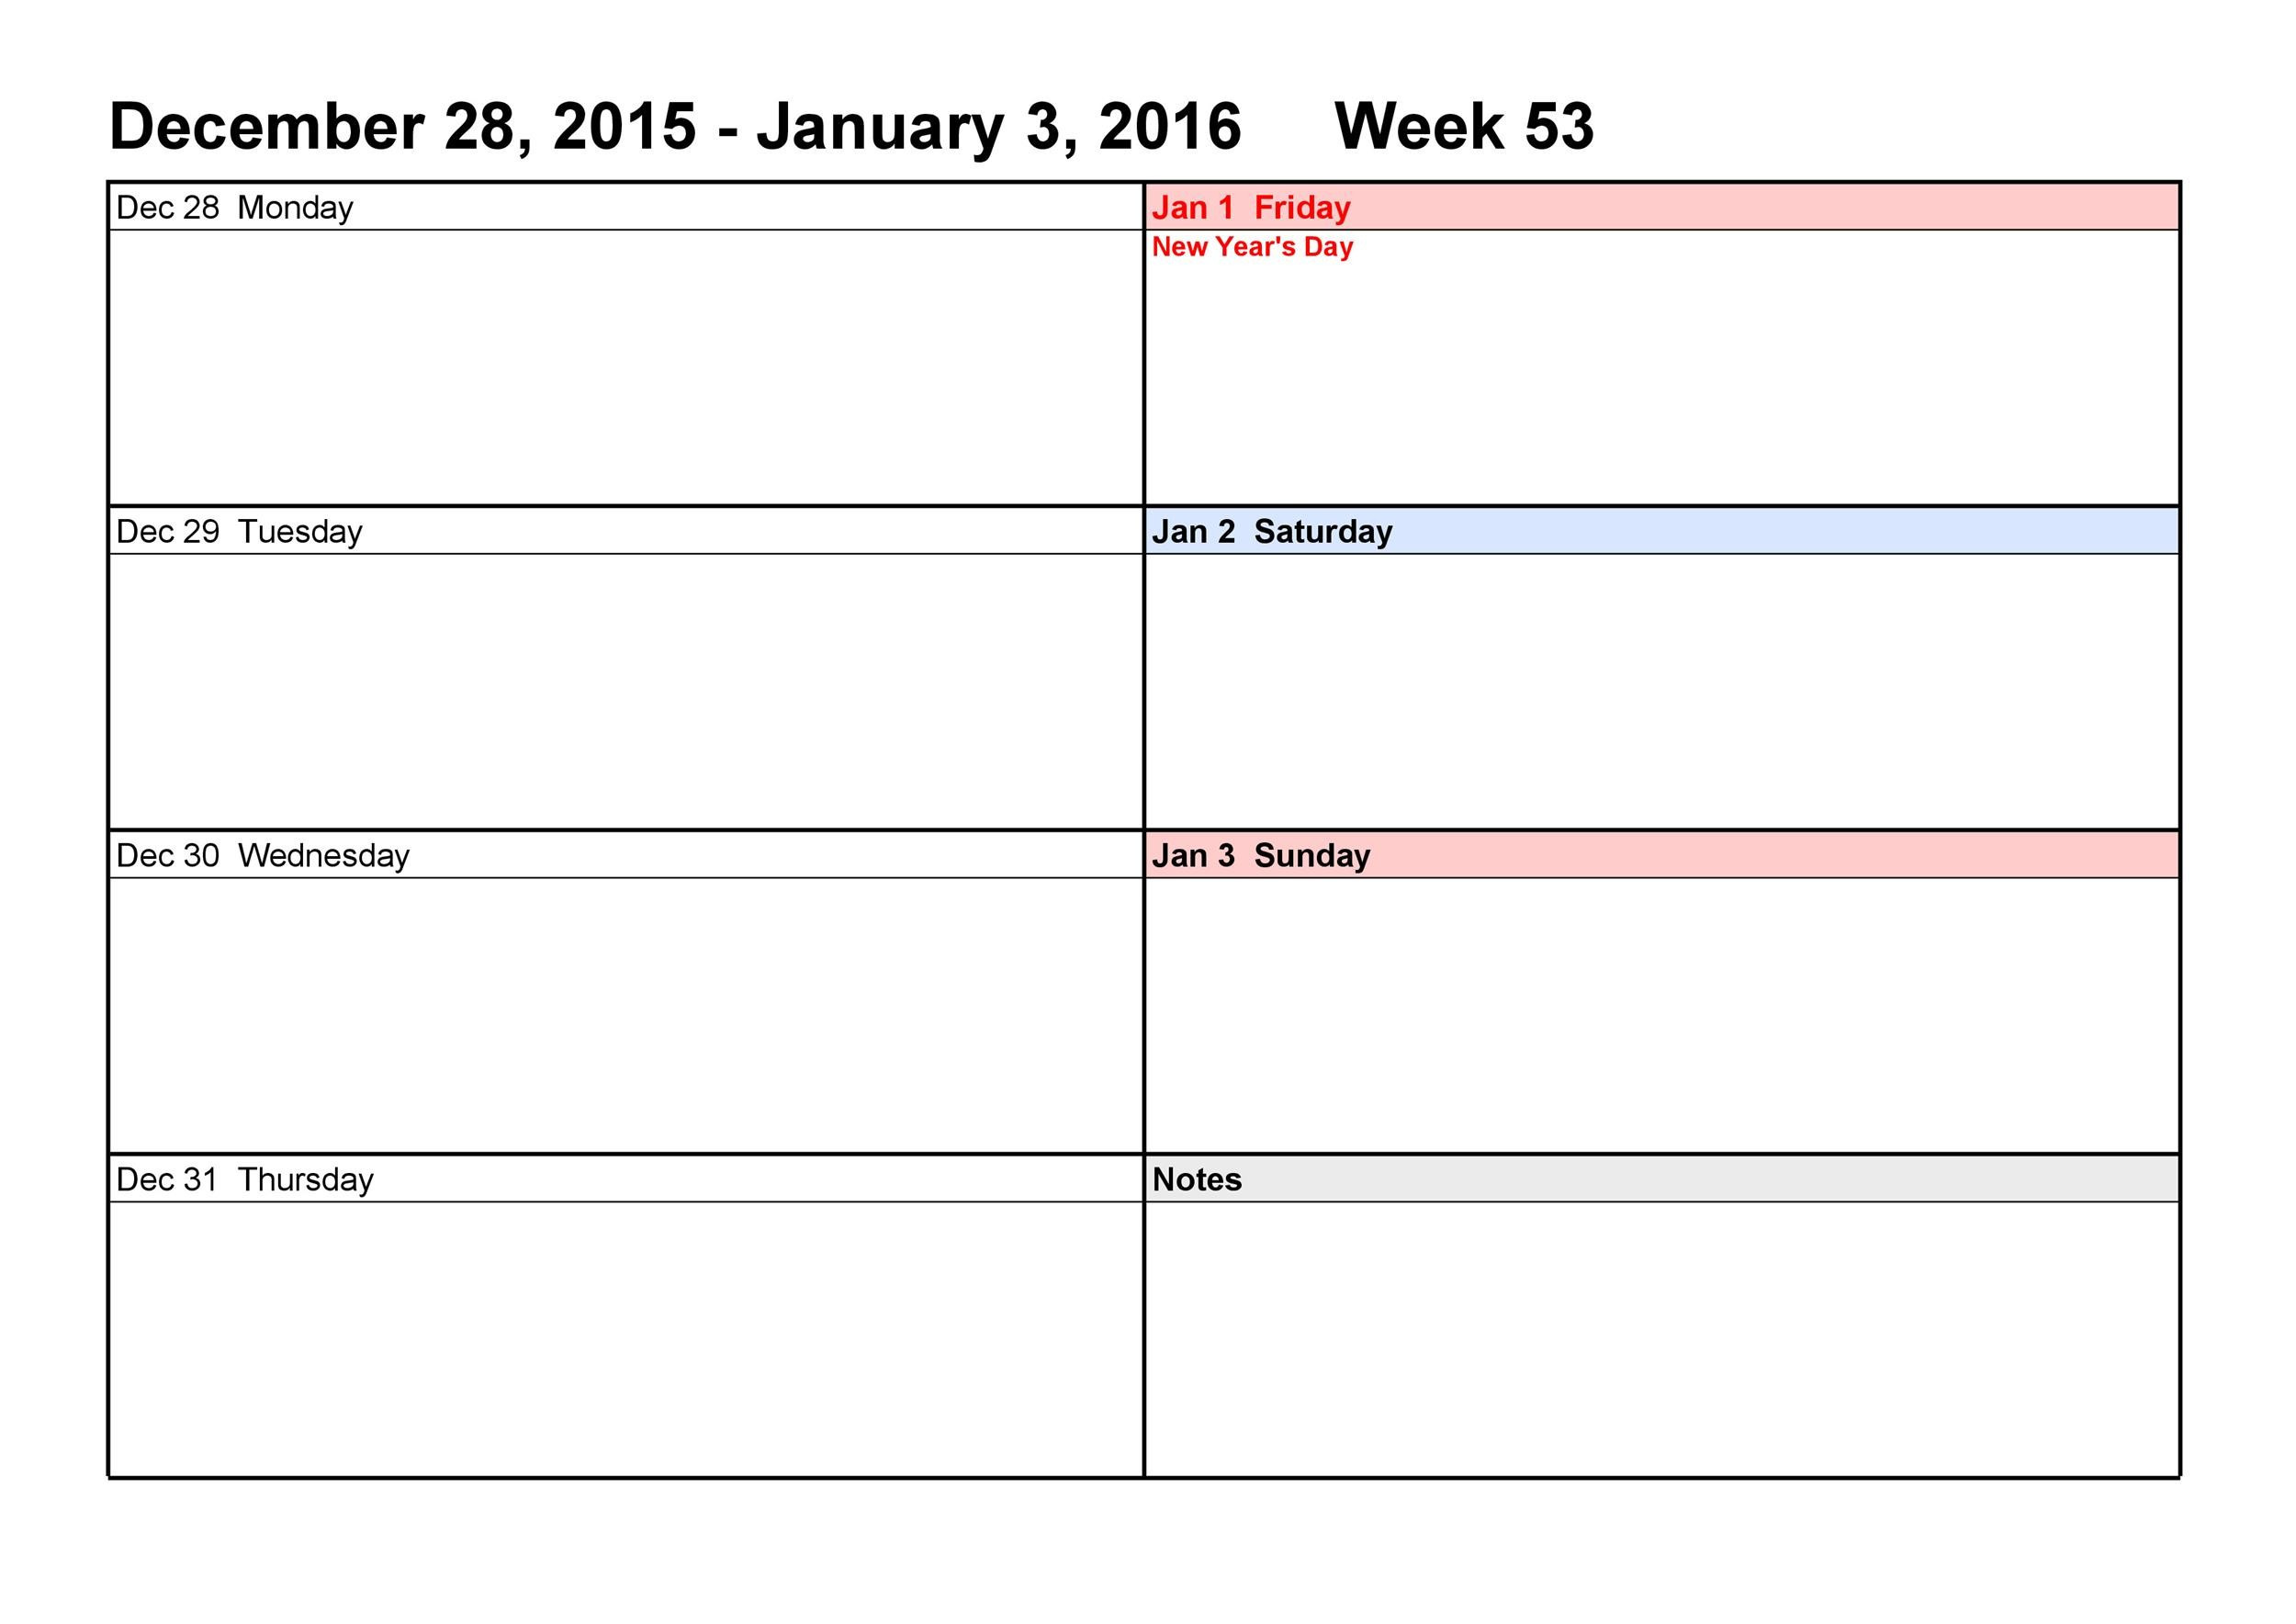 Free Weekly Calendar Template 26 Blank Weekly Calendar Templates [pdf Excel Word]